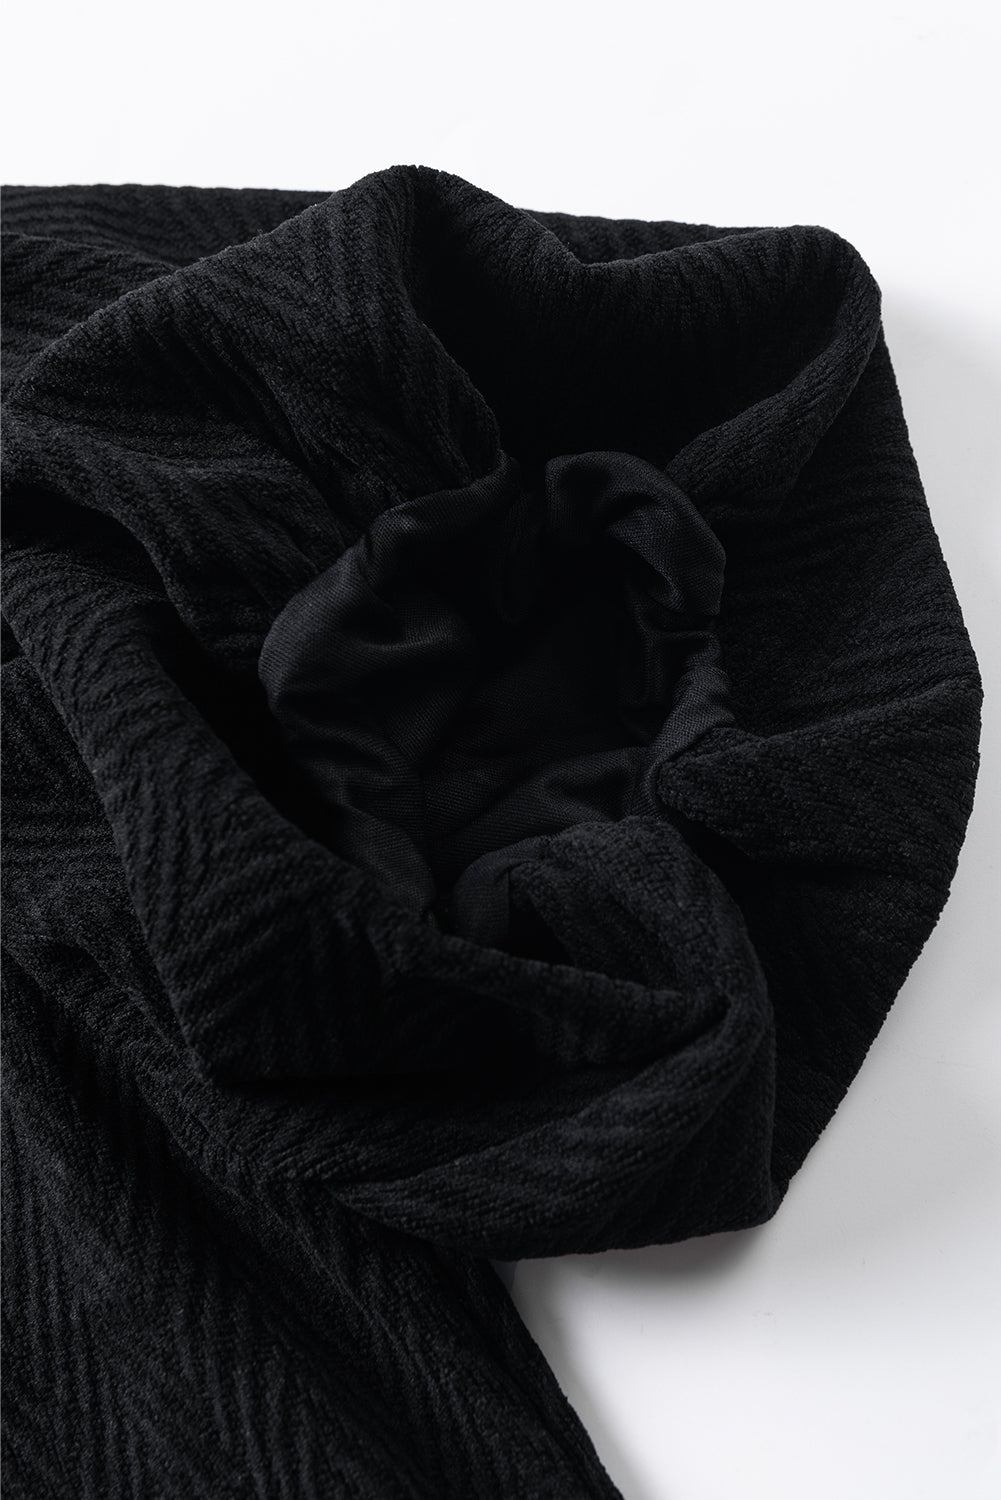 Schwarze, einfarbige, strukturierte Bluse mit Stehkragen und Puffärmeln